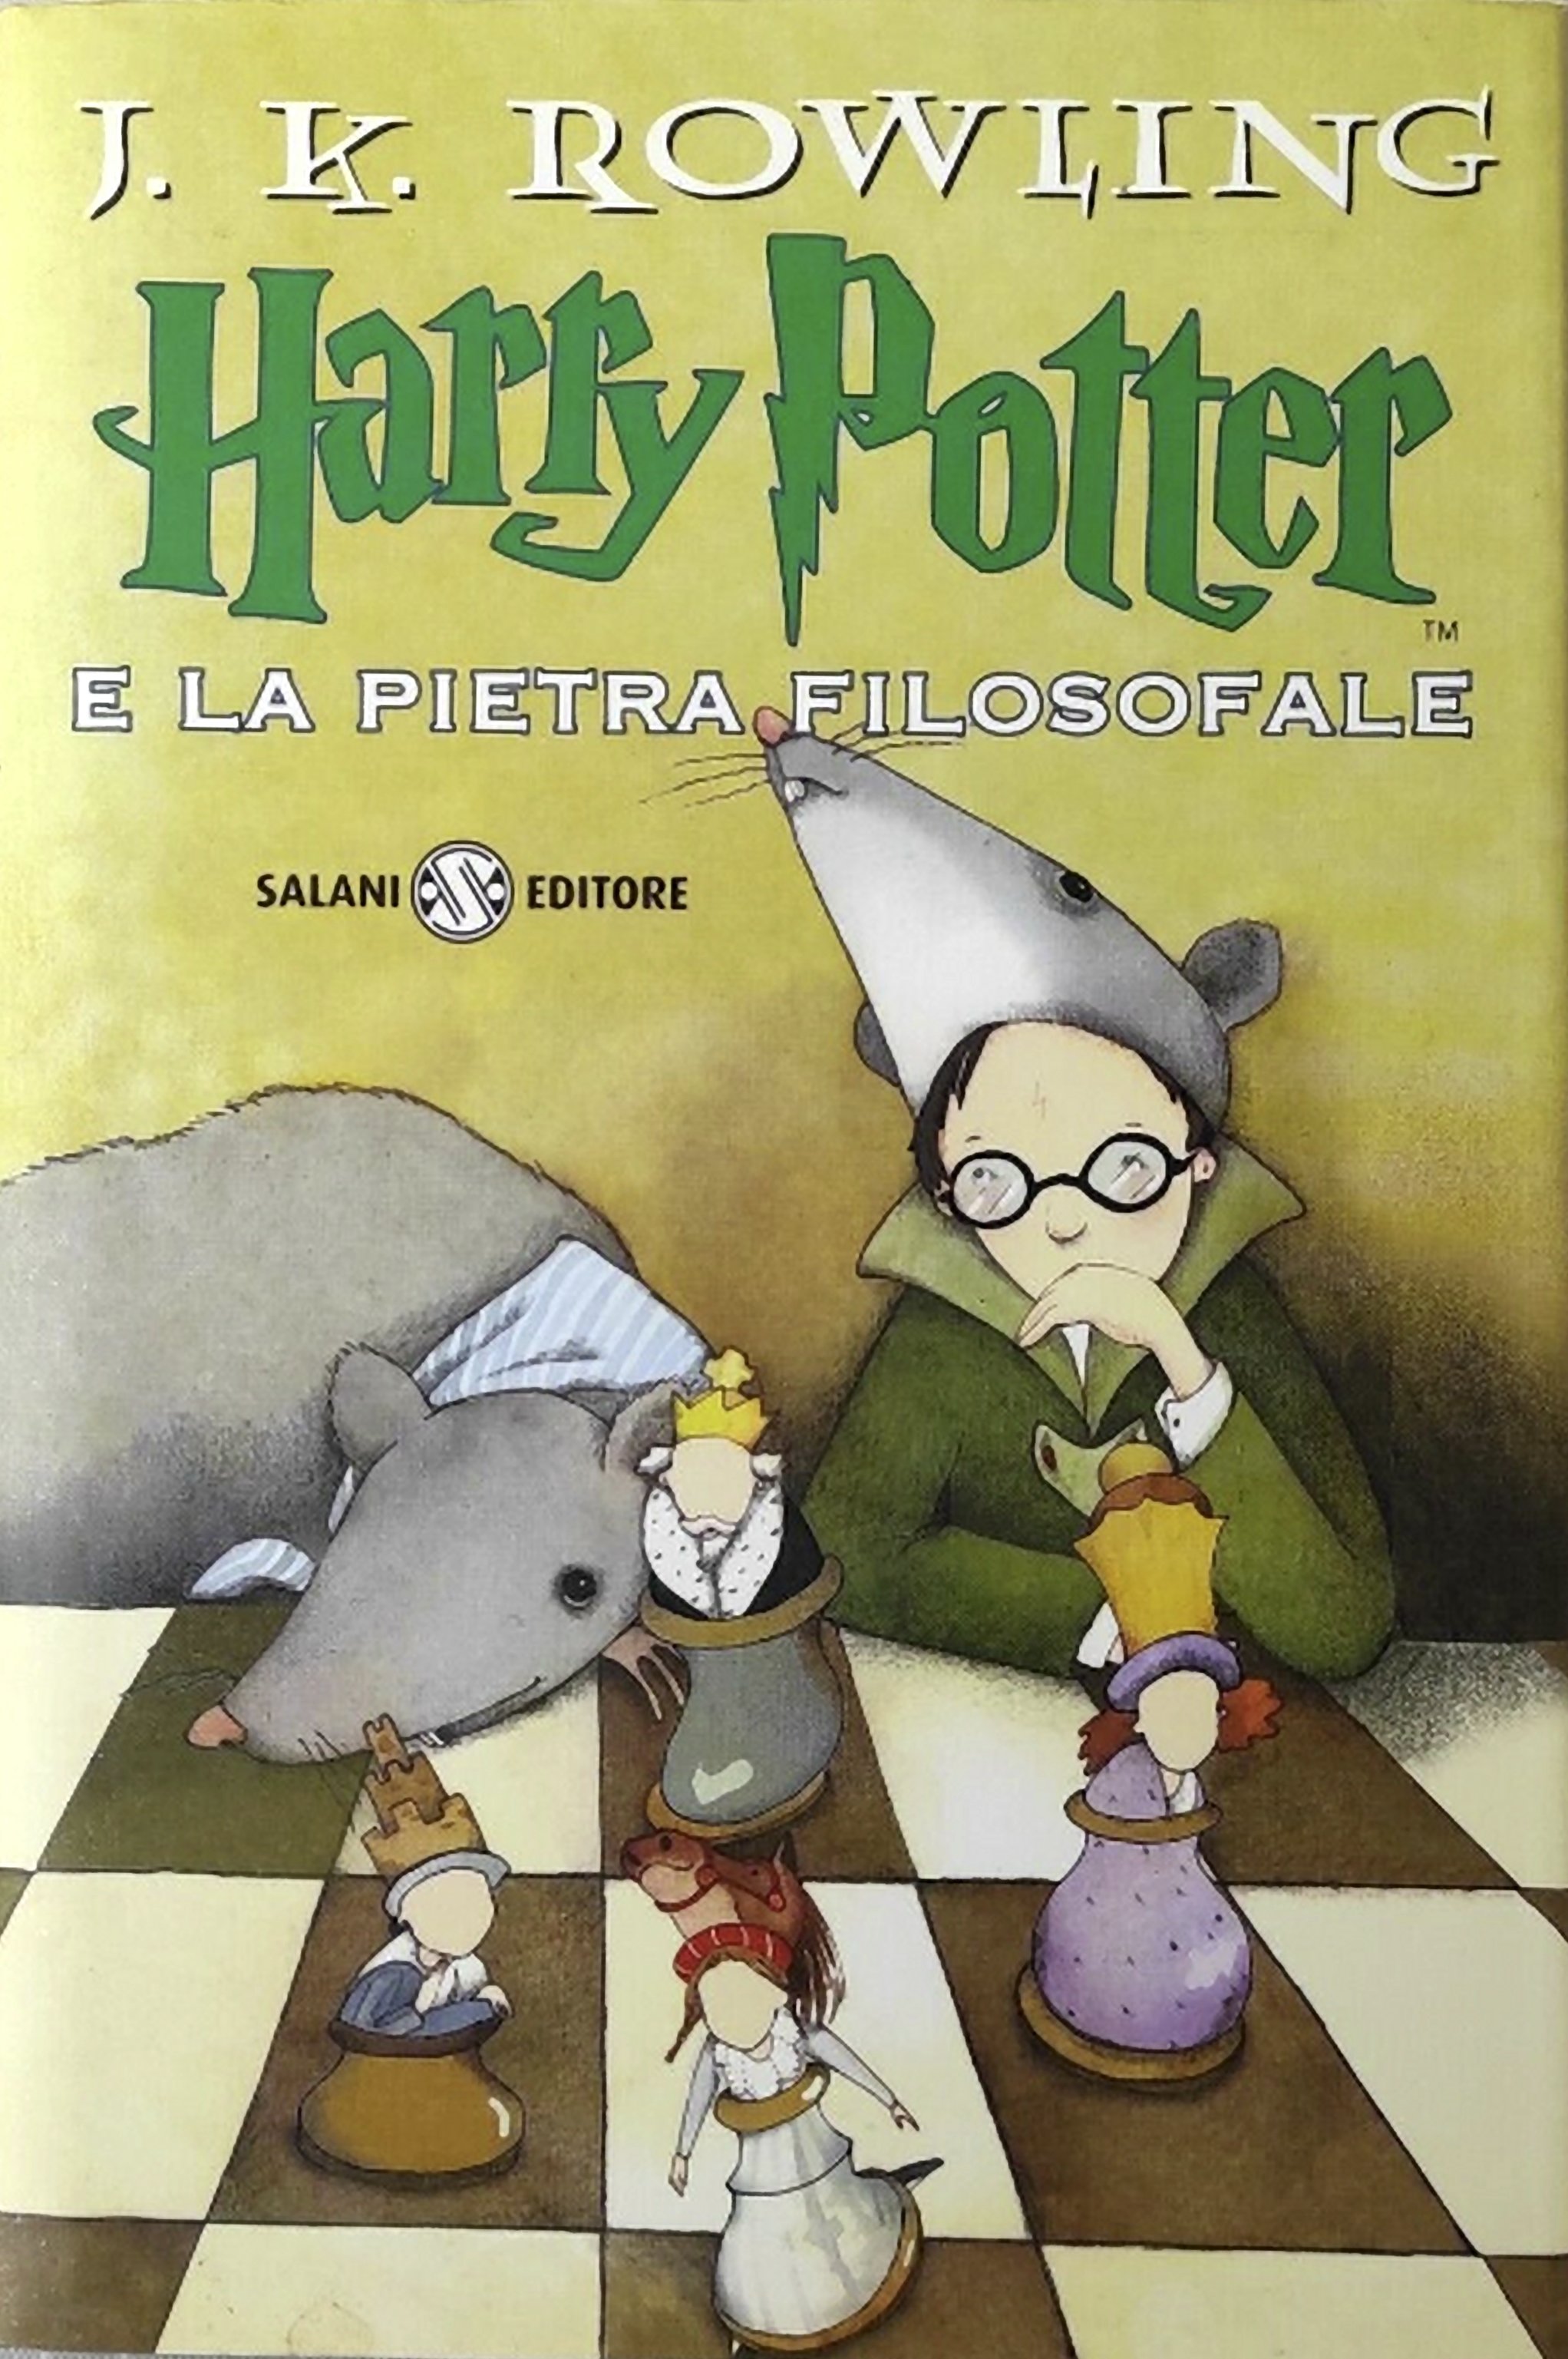 More about Harry Potter e la pietra filosofale